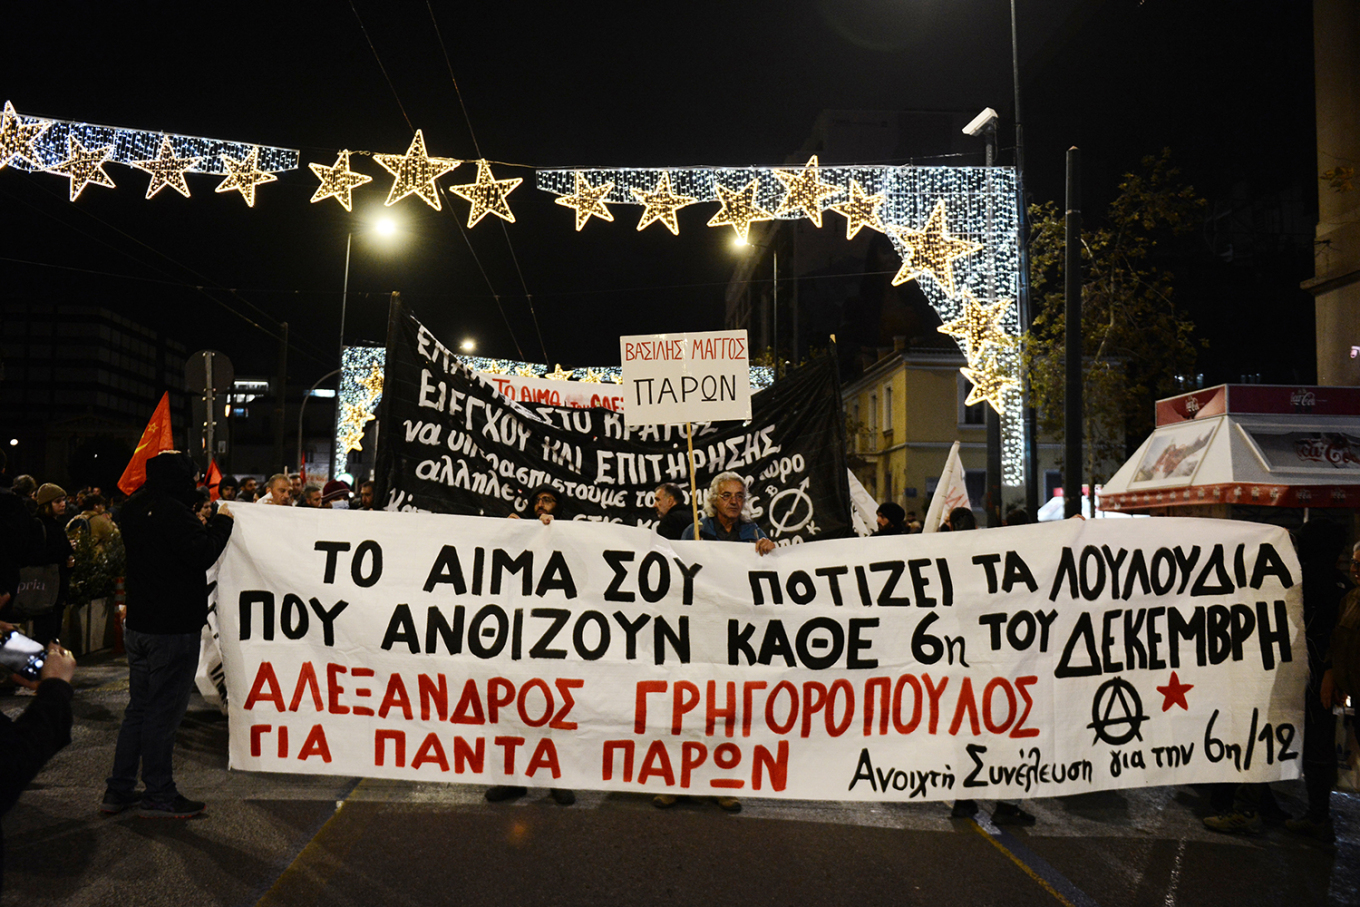 Επέτειος Γρηγορόπουλου: Ξεκίνησε η πορεία από τα Προπύλαια - Αποκλεισμένο το κέντρο της Αθήνας